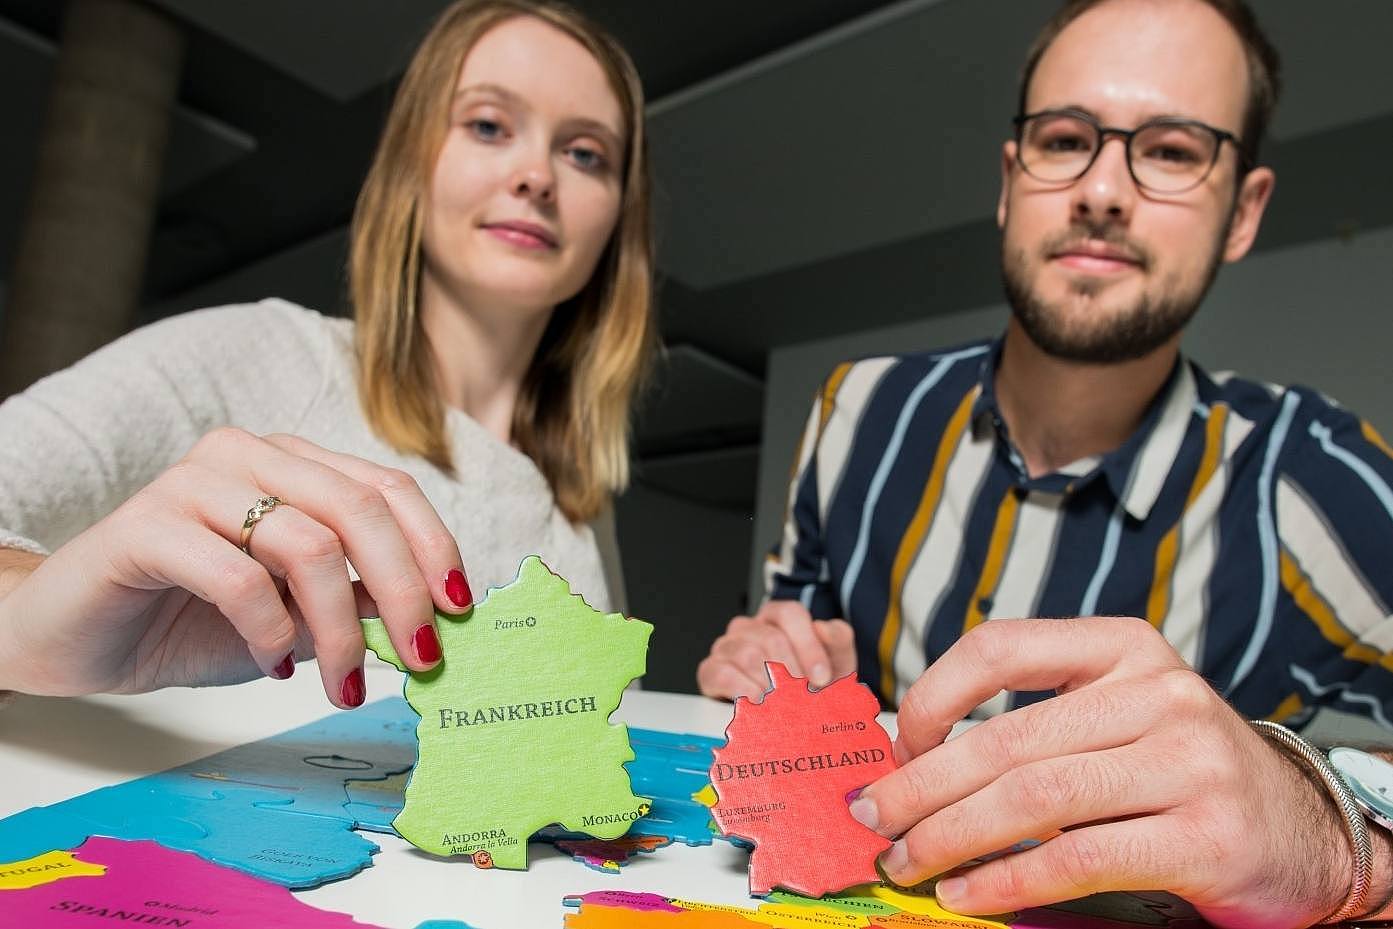 Studentin und Student zeigen zwei Puzzleteile mit dem Umriss von Frankreich und Deutschland